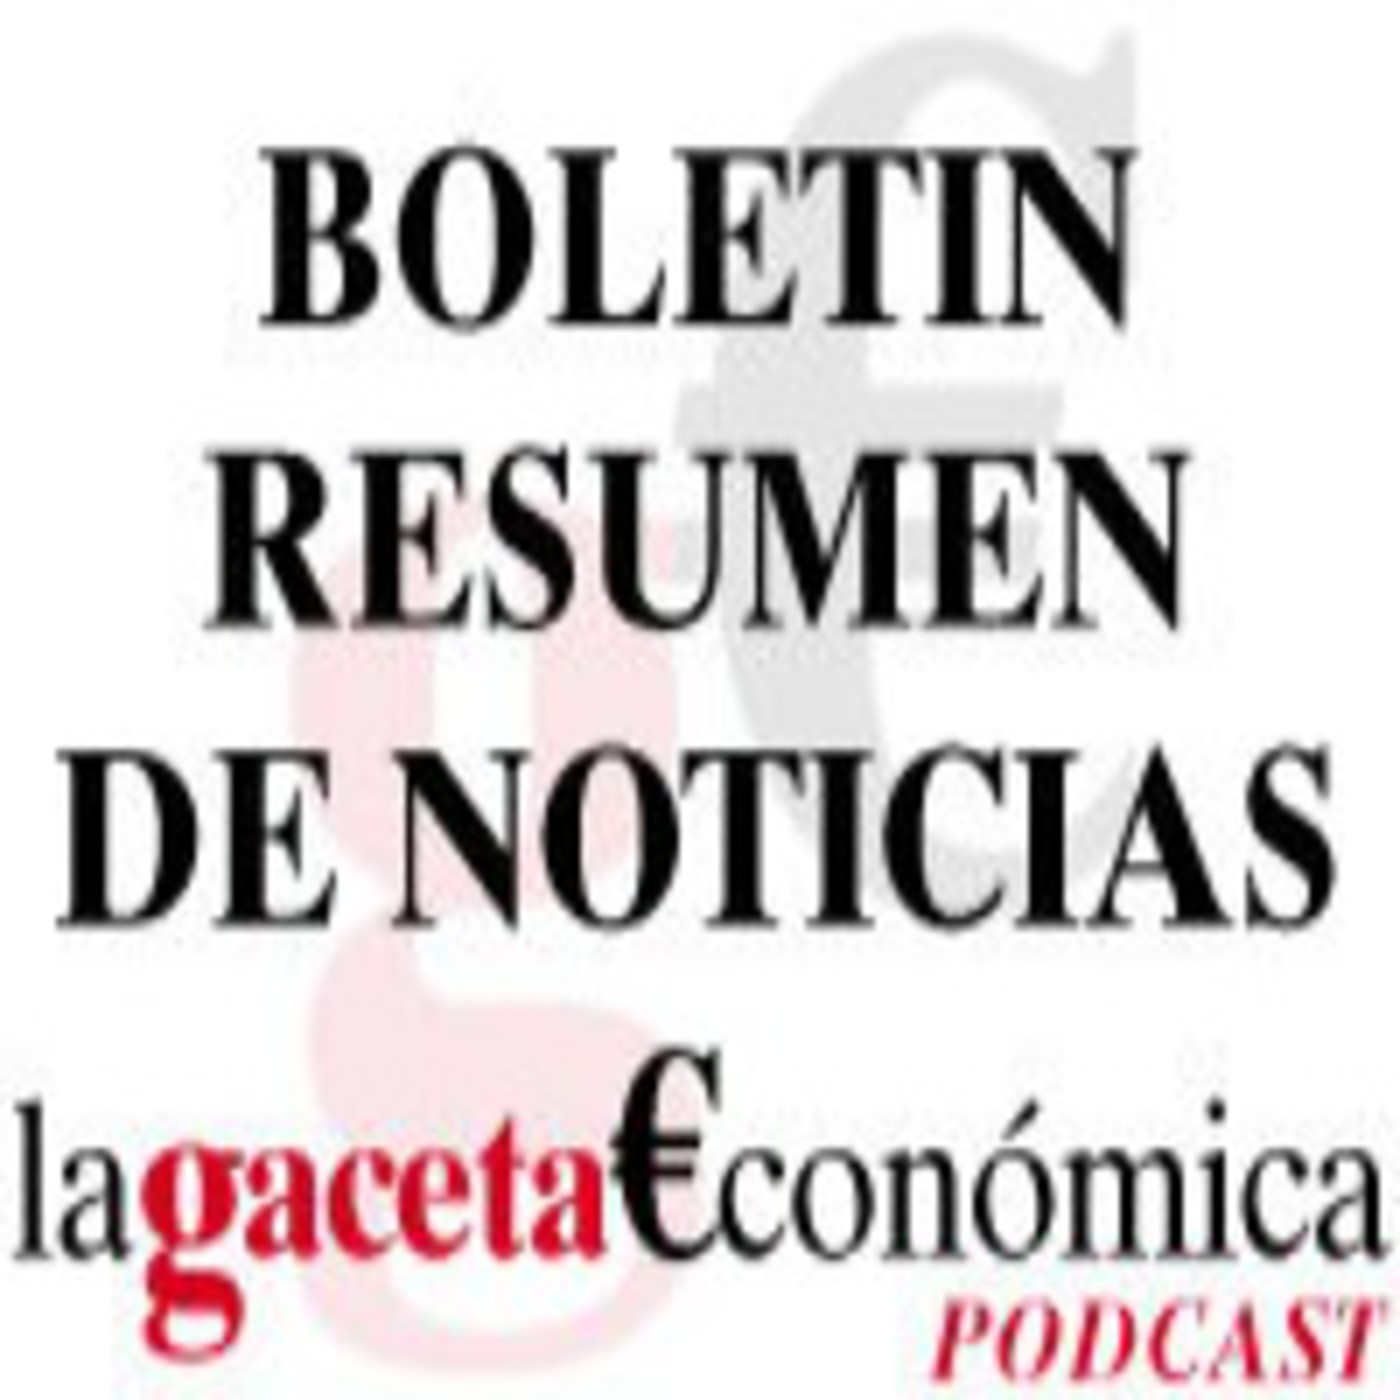 Boletin Noticias 20 abril 2011 La Gaceta Económica de Almería